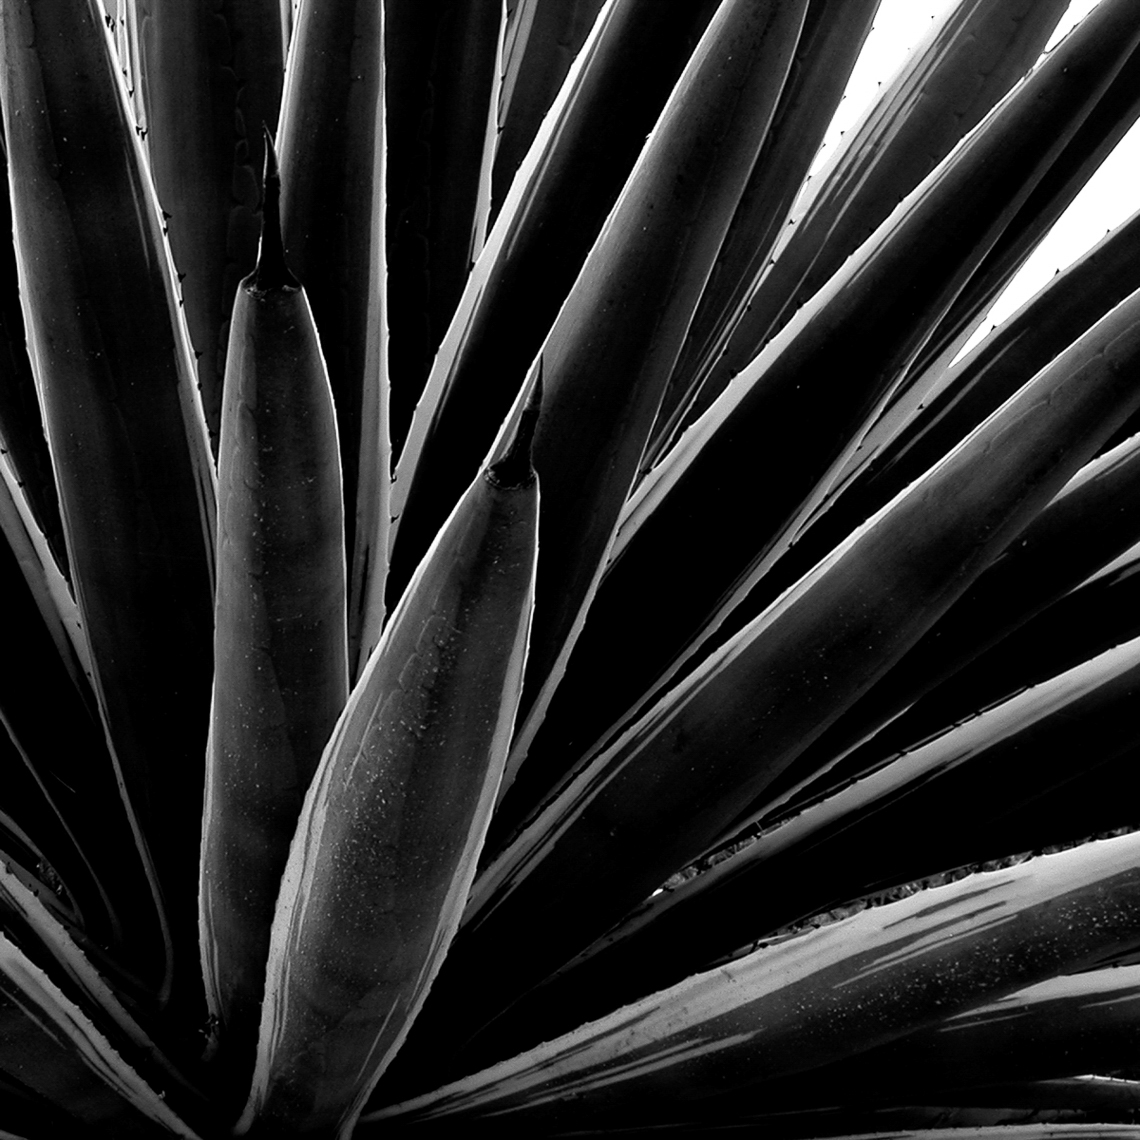 CactusSprayRightBWDSCN4805_28-Flora